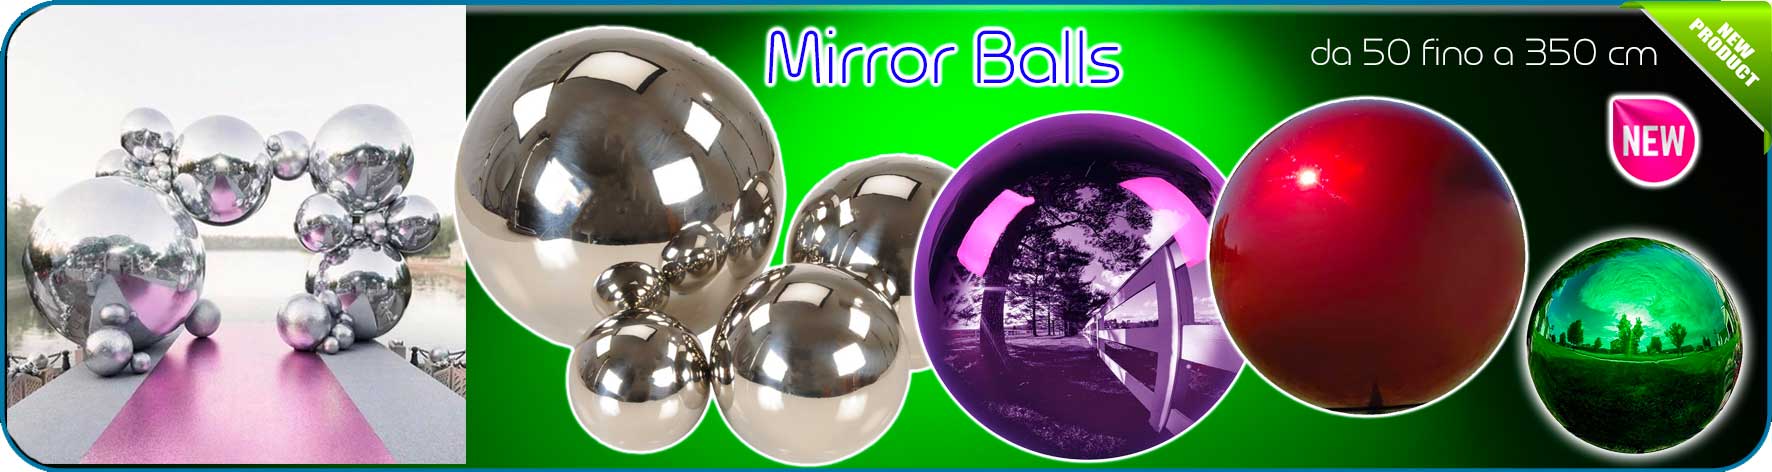 mirror-balls-banner